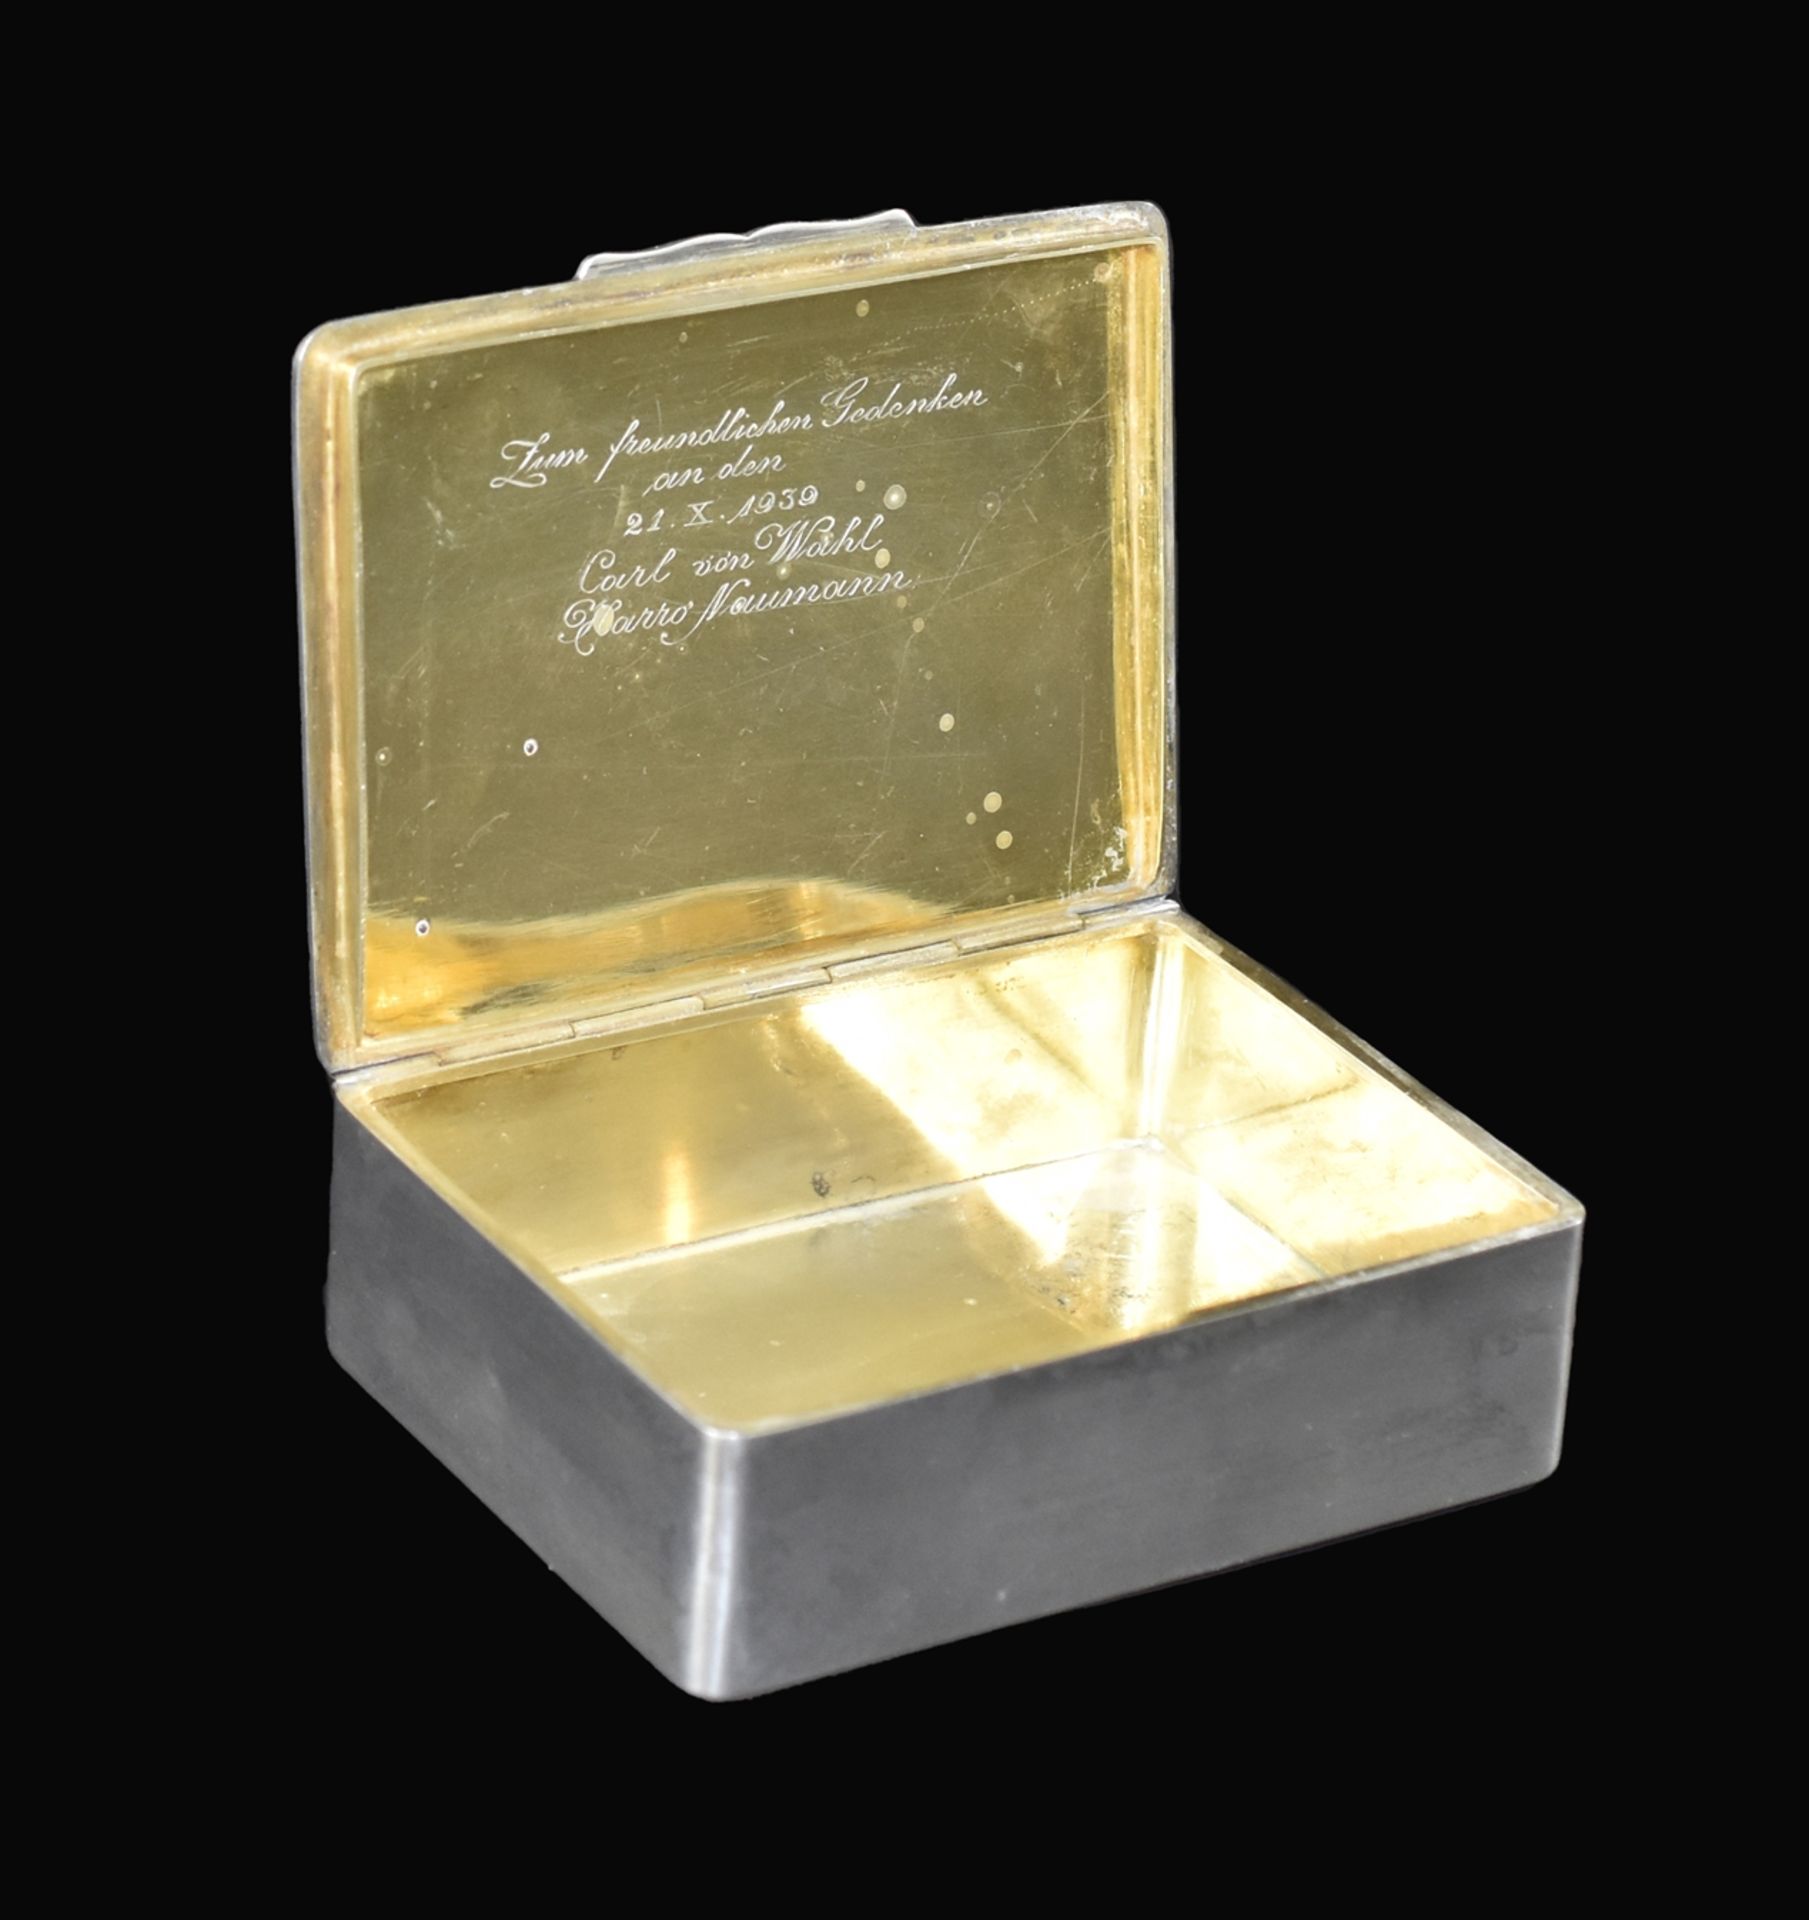 Rechteckige Silberdose mit Klappdeckel, darauf aufgesetztes Monogramm "JJ". Innen vergoldet. Meiste - Image 2 of 2